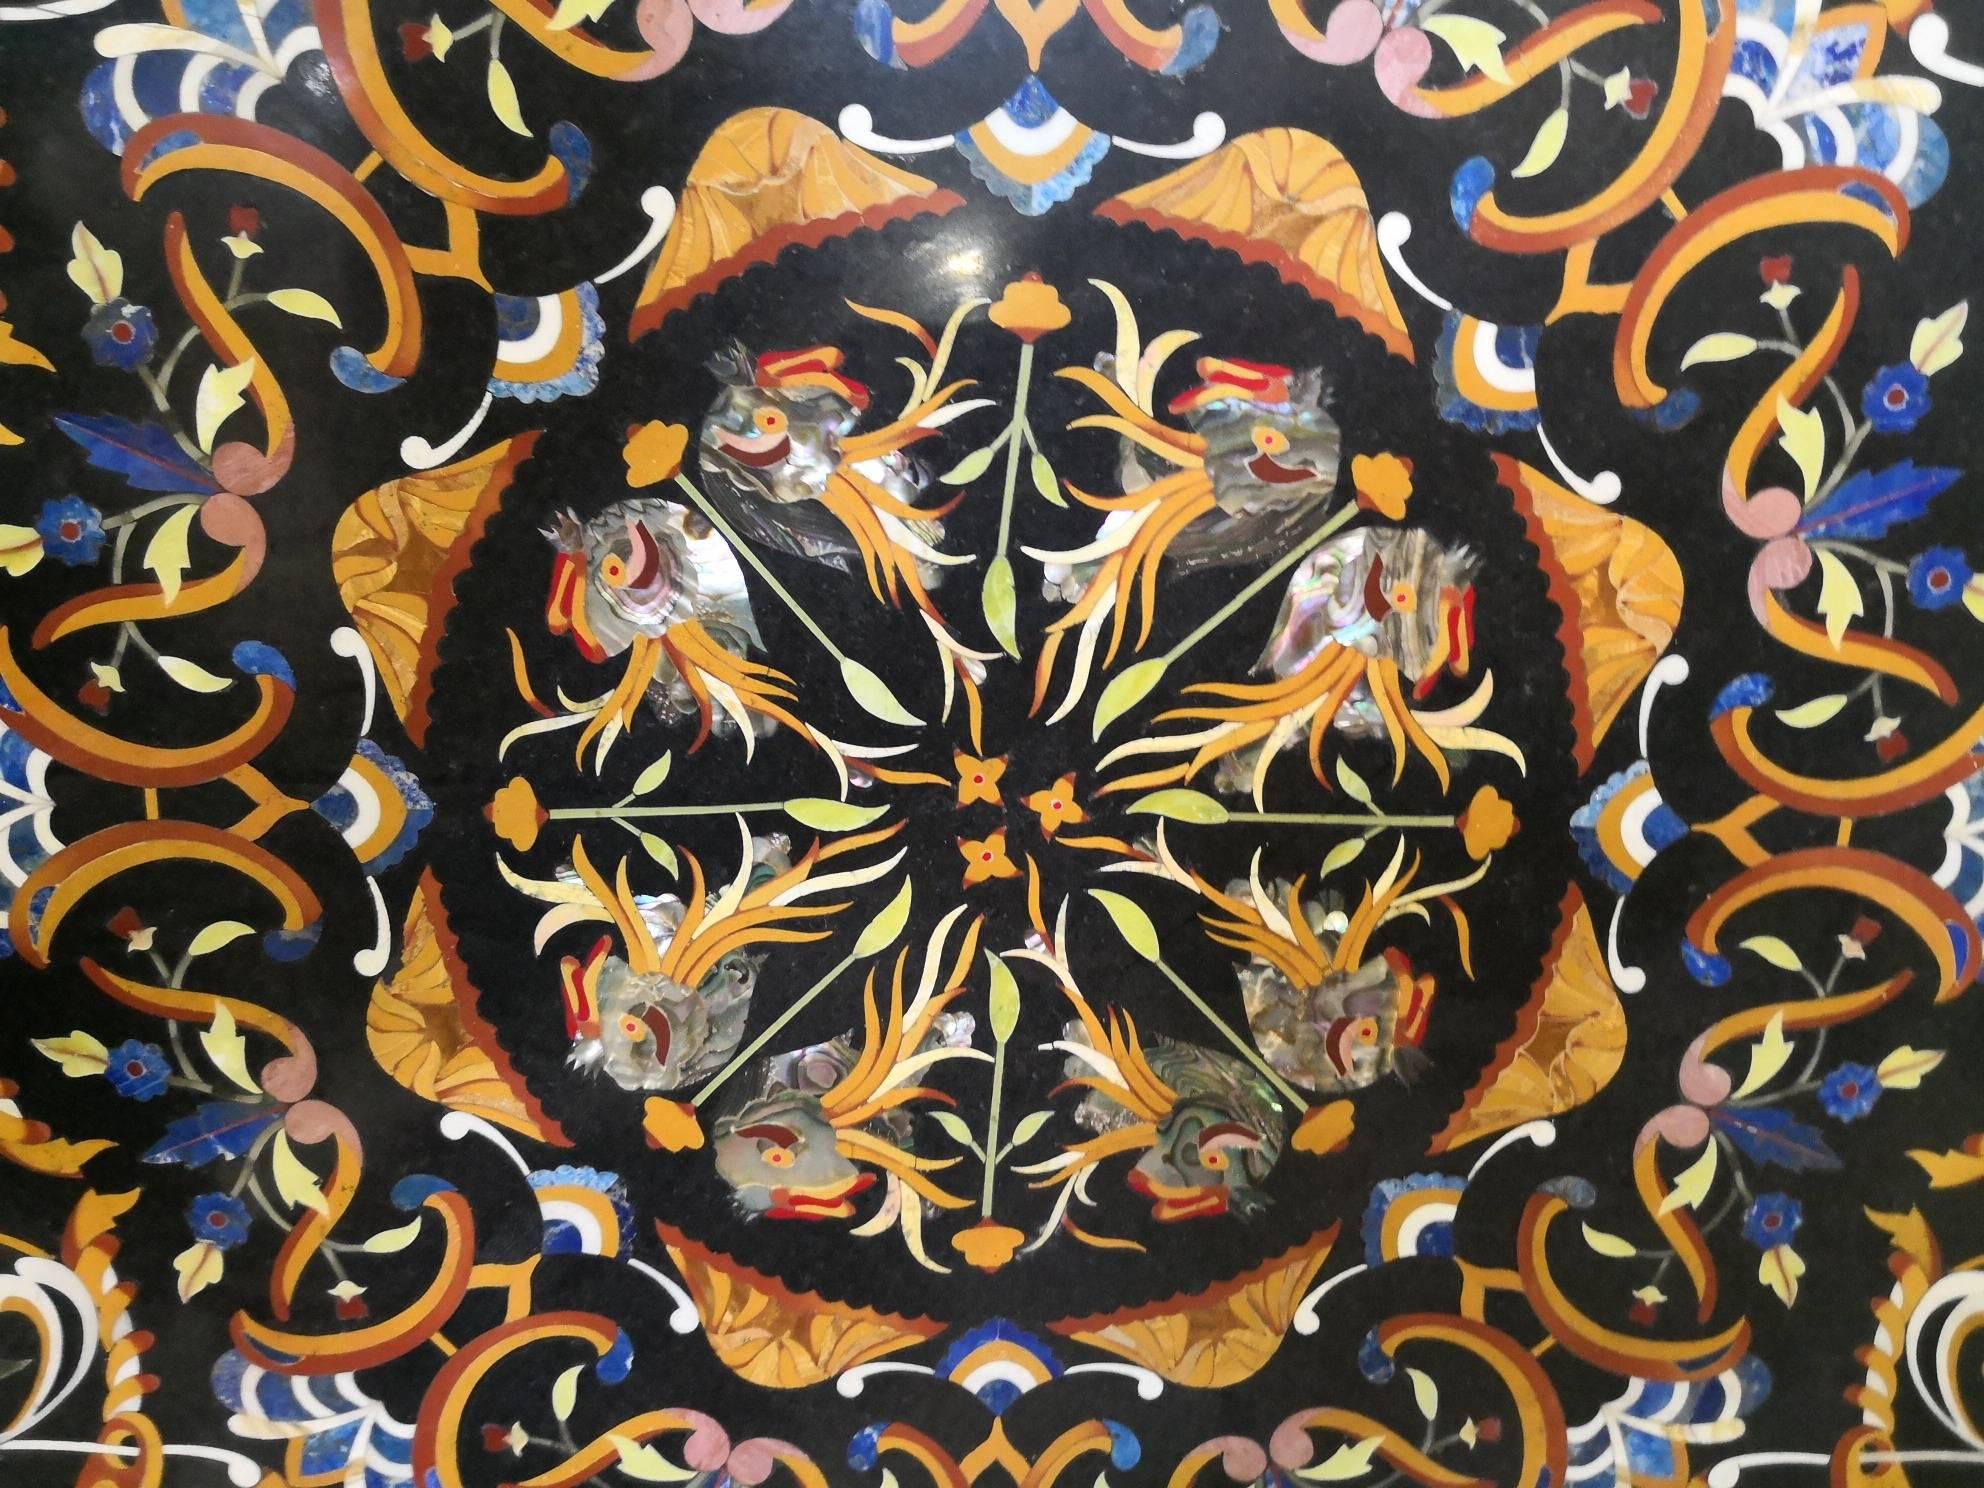 Reproduction artisanale d'un motif ornemental italien des années 1700 sur un plateau de table en marbre noir de Belgique. Des vases avec des fleurs, des coquillages, des poissons et une myriade d'éléments sont confirmés par l'utilisation astucieuse